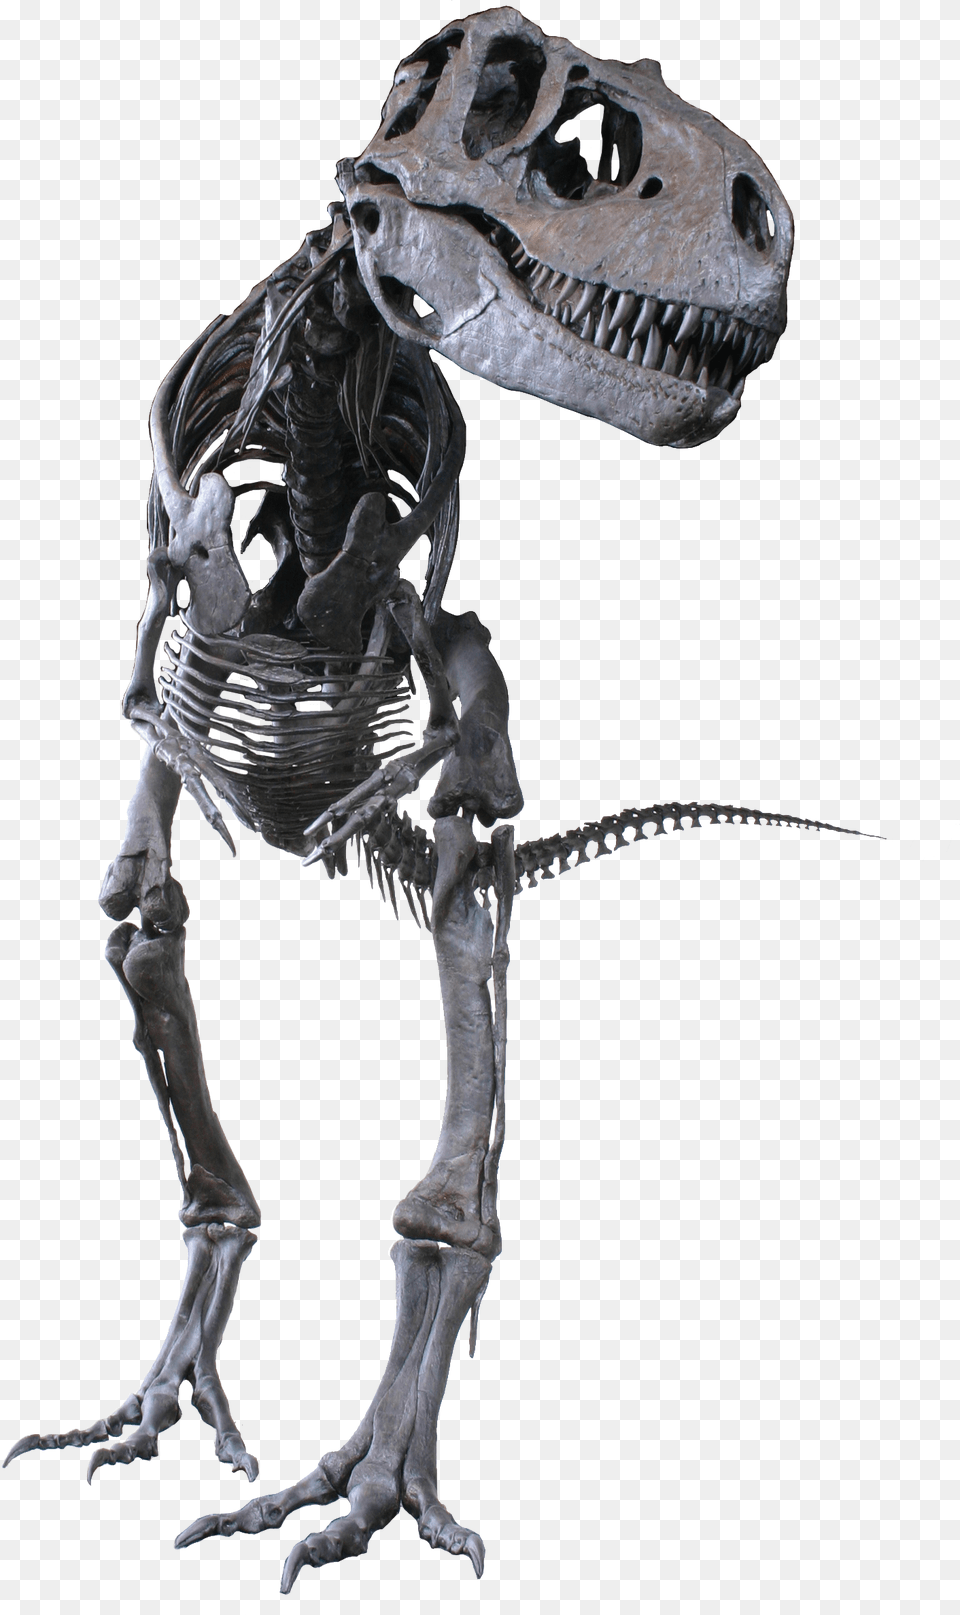 Albertosaurus Clean Albertosaurus Sarcophagus, Animal, Dinosaur, Reptile, T-rex Free Png Download